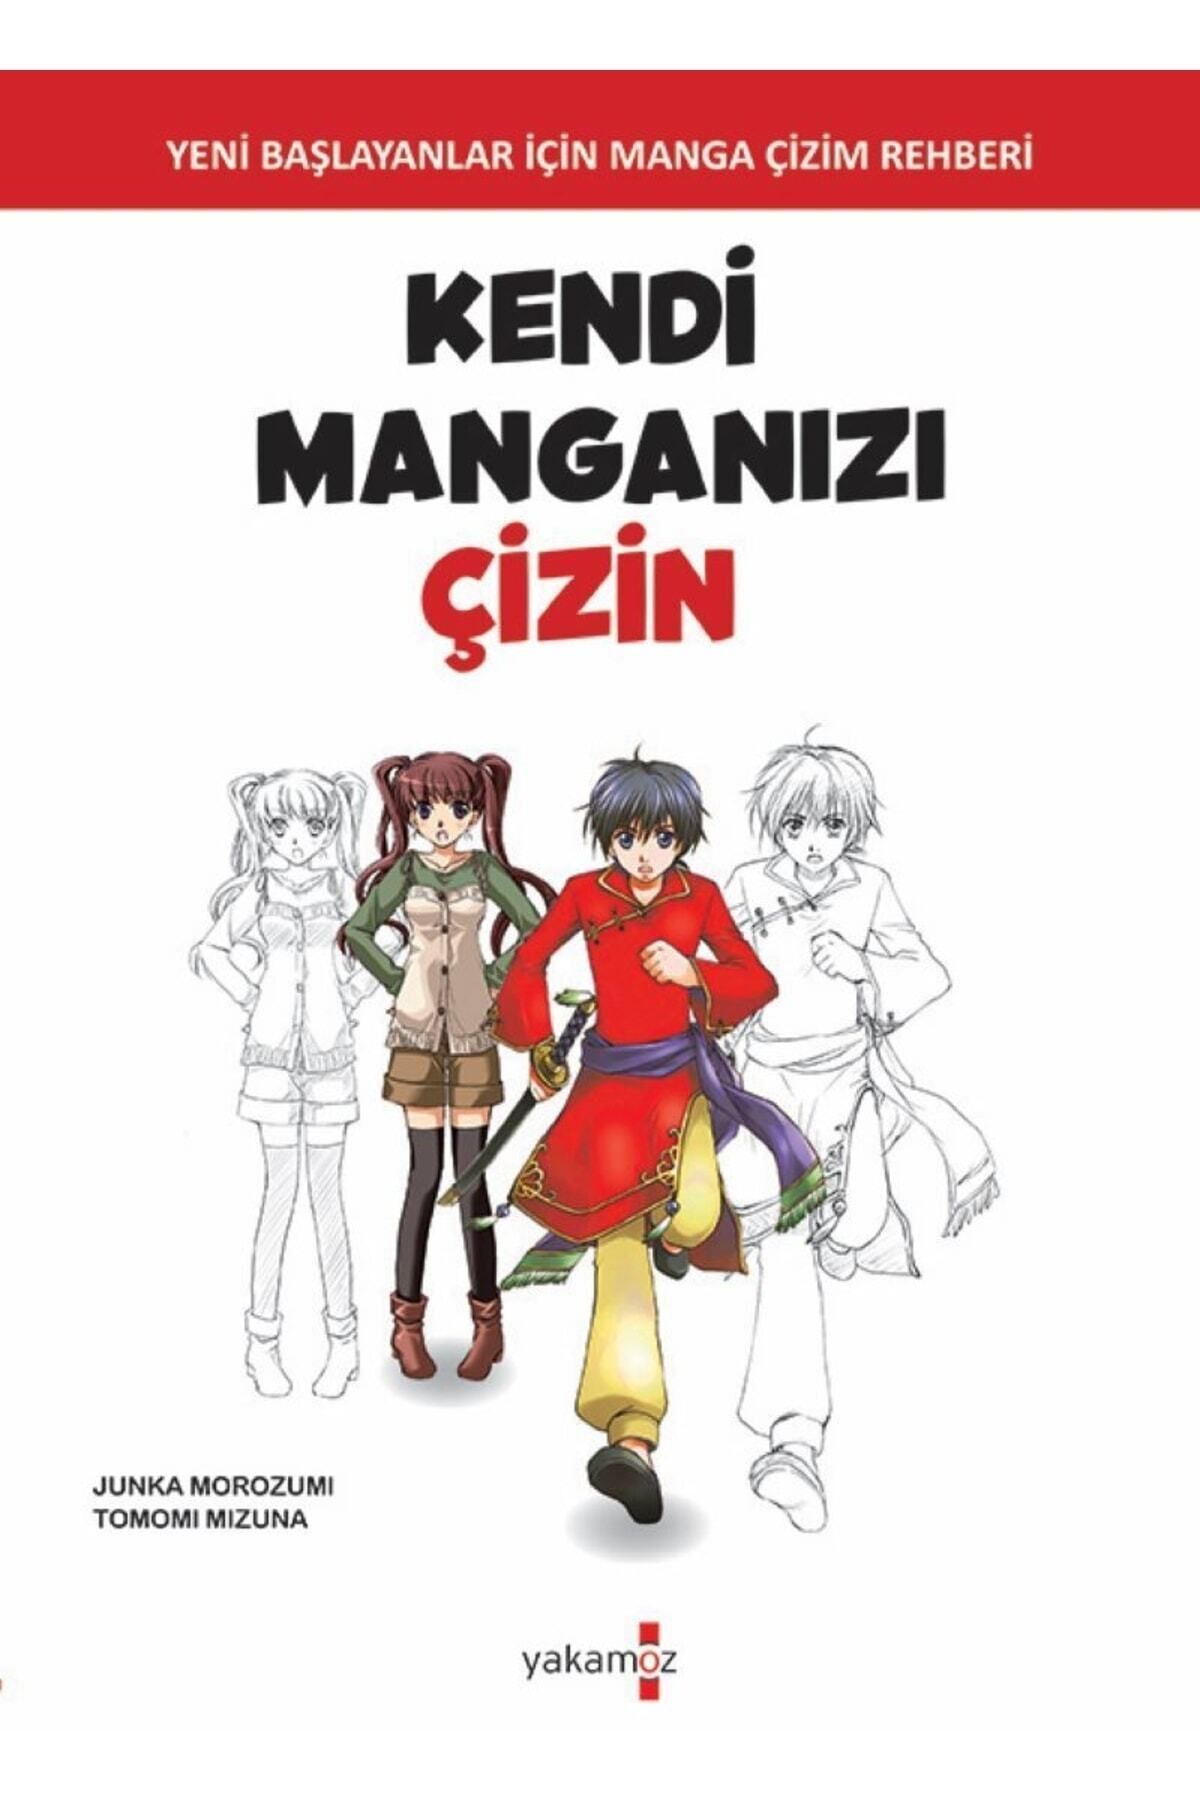 Yakamoz Yayınları Kendi Manganızı Çizin, Junka Morozumi & Tomomi Mizuna, , Kendi Manganızı Çizin Kitab